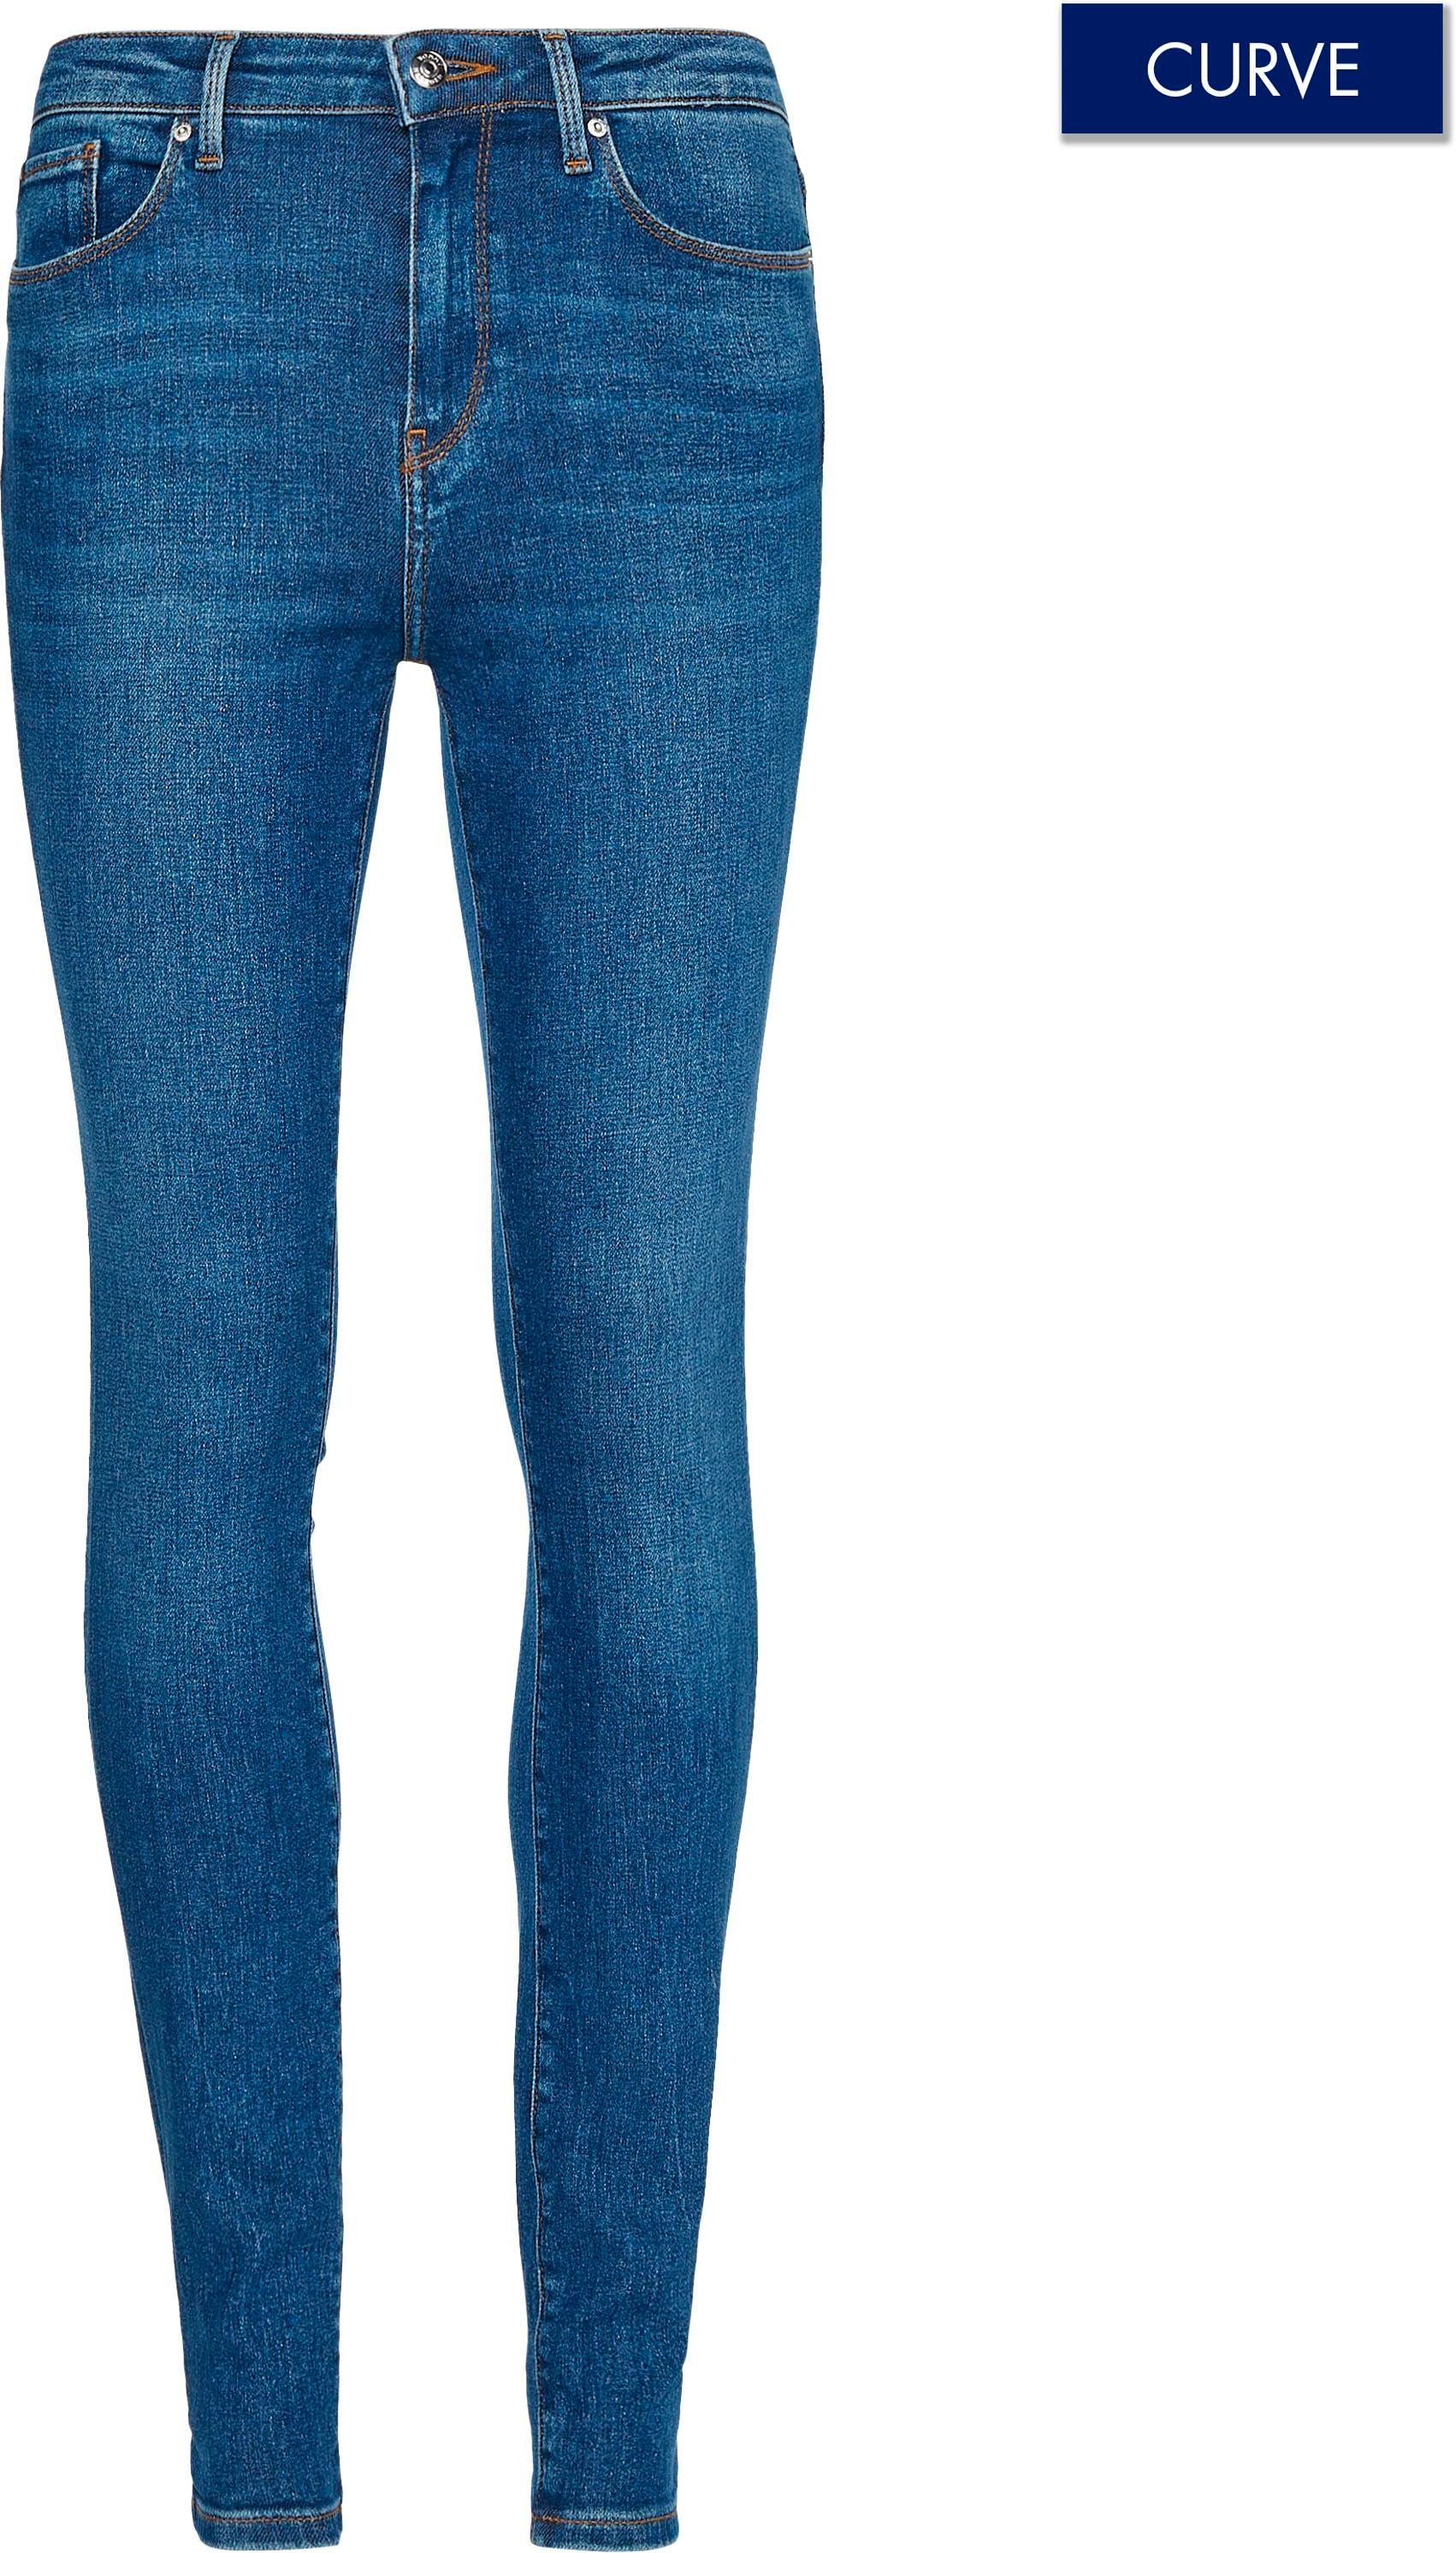 Tommy Hilfiger Damen Tapered-Jeans online kaufen | OTTO